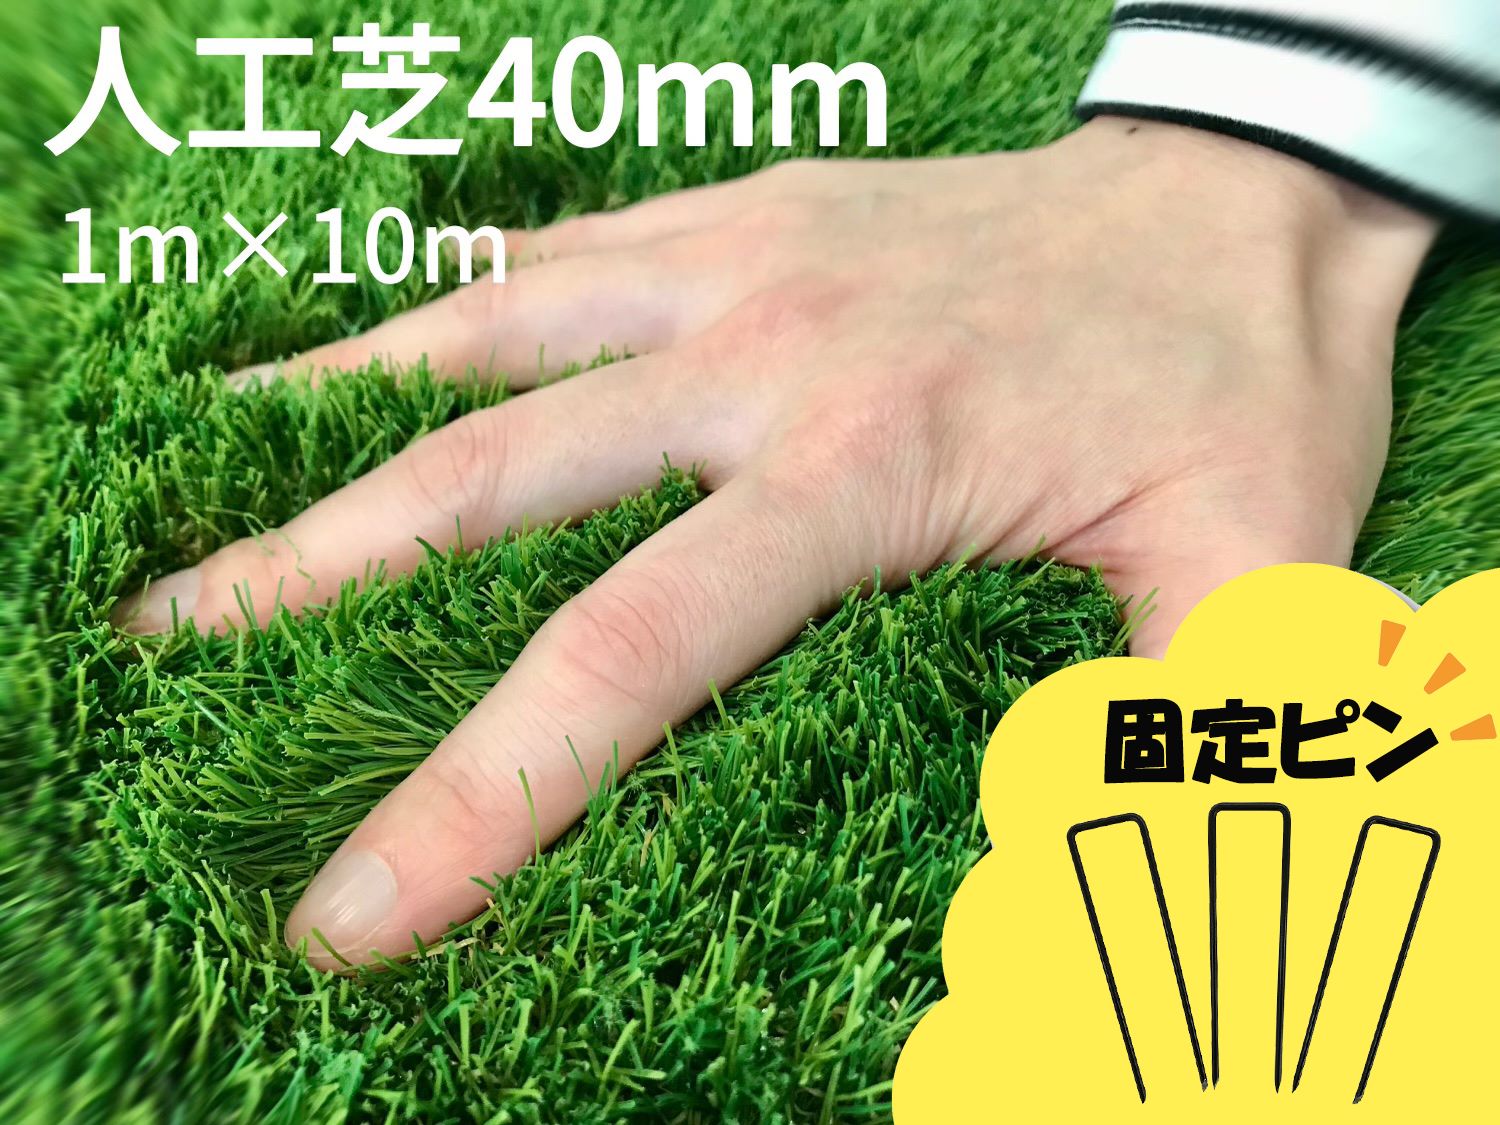 『人工芝40mm（1m×10m）固定ピン50本』セット耐用年数8年（送料無料）白崎コーポレーション